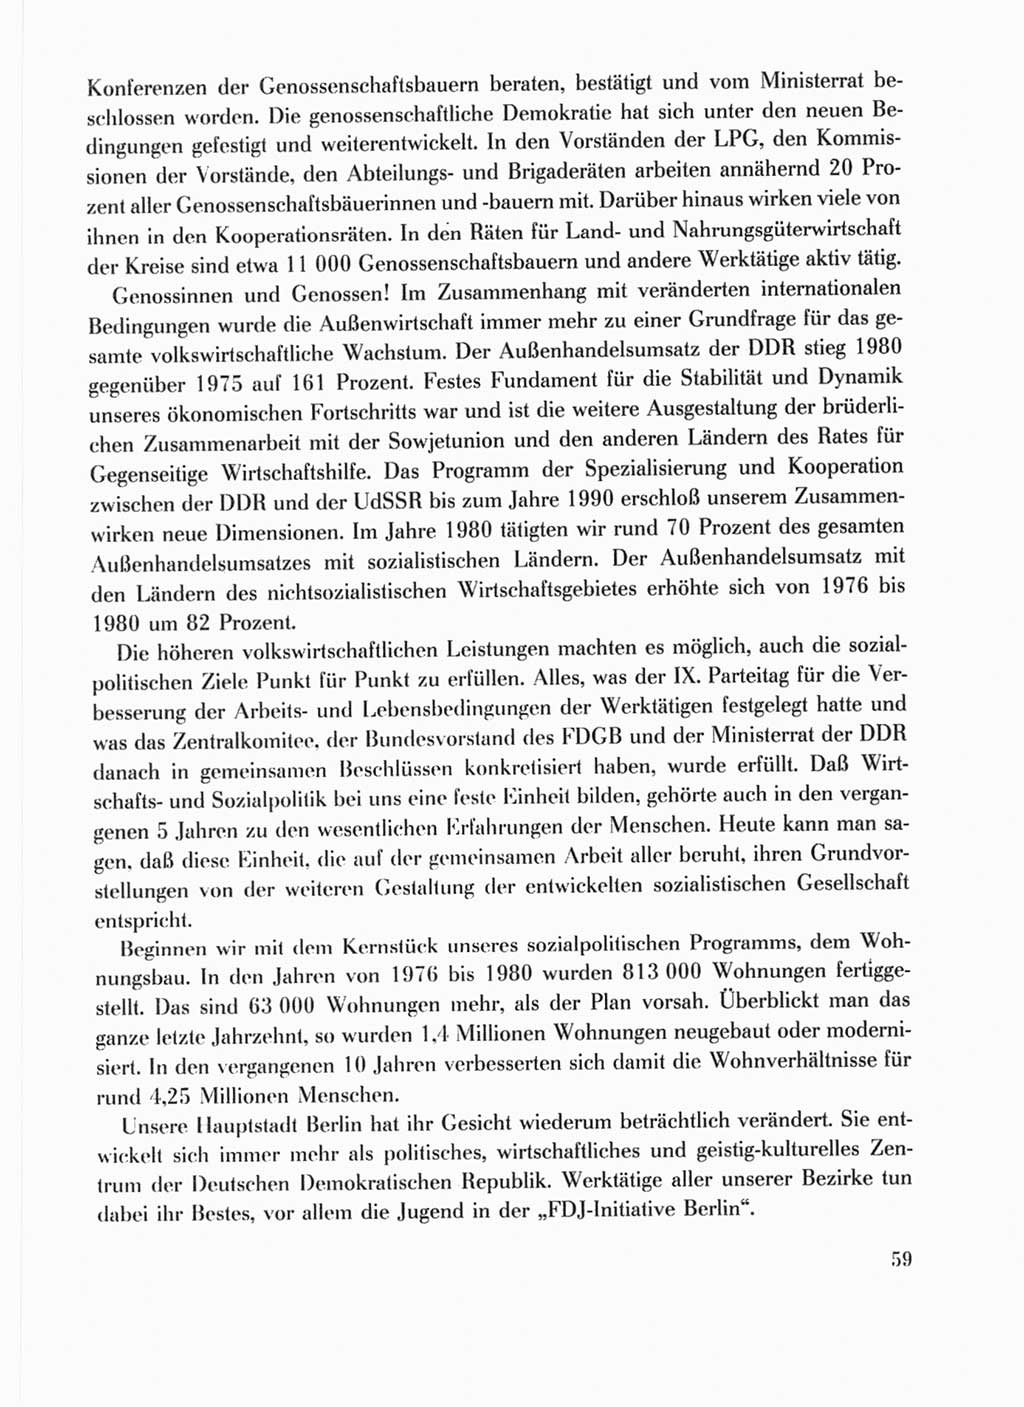 Protokoll der Verhandlungen des Ⅹ. Parteitages der Sozialistischen Einheitspartei Deutschlands (SED) [Deutsche Demokratische Republik (DDR)] 1981, Band 1, Seite 59 (Prot. Verh. Ⅹ. PT SED DDR 1981, Bd. 1, S. 59)